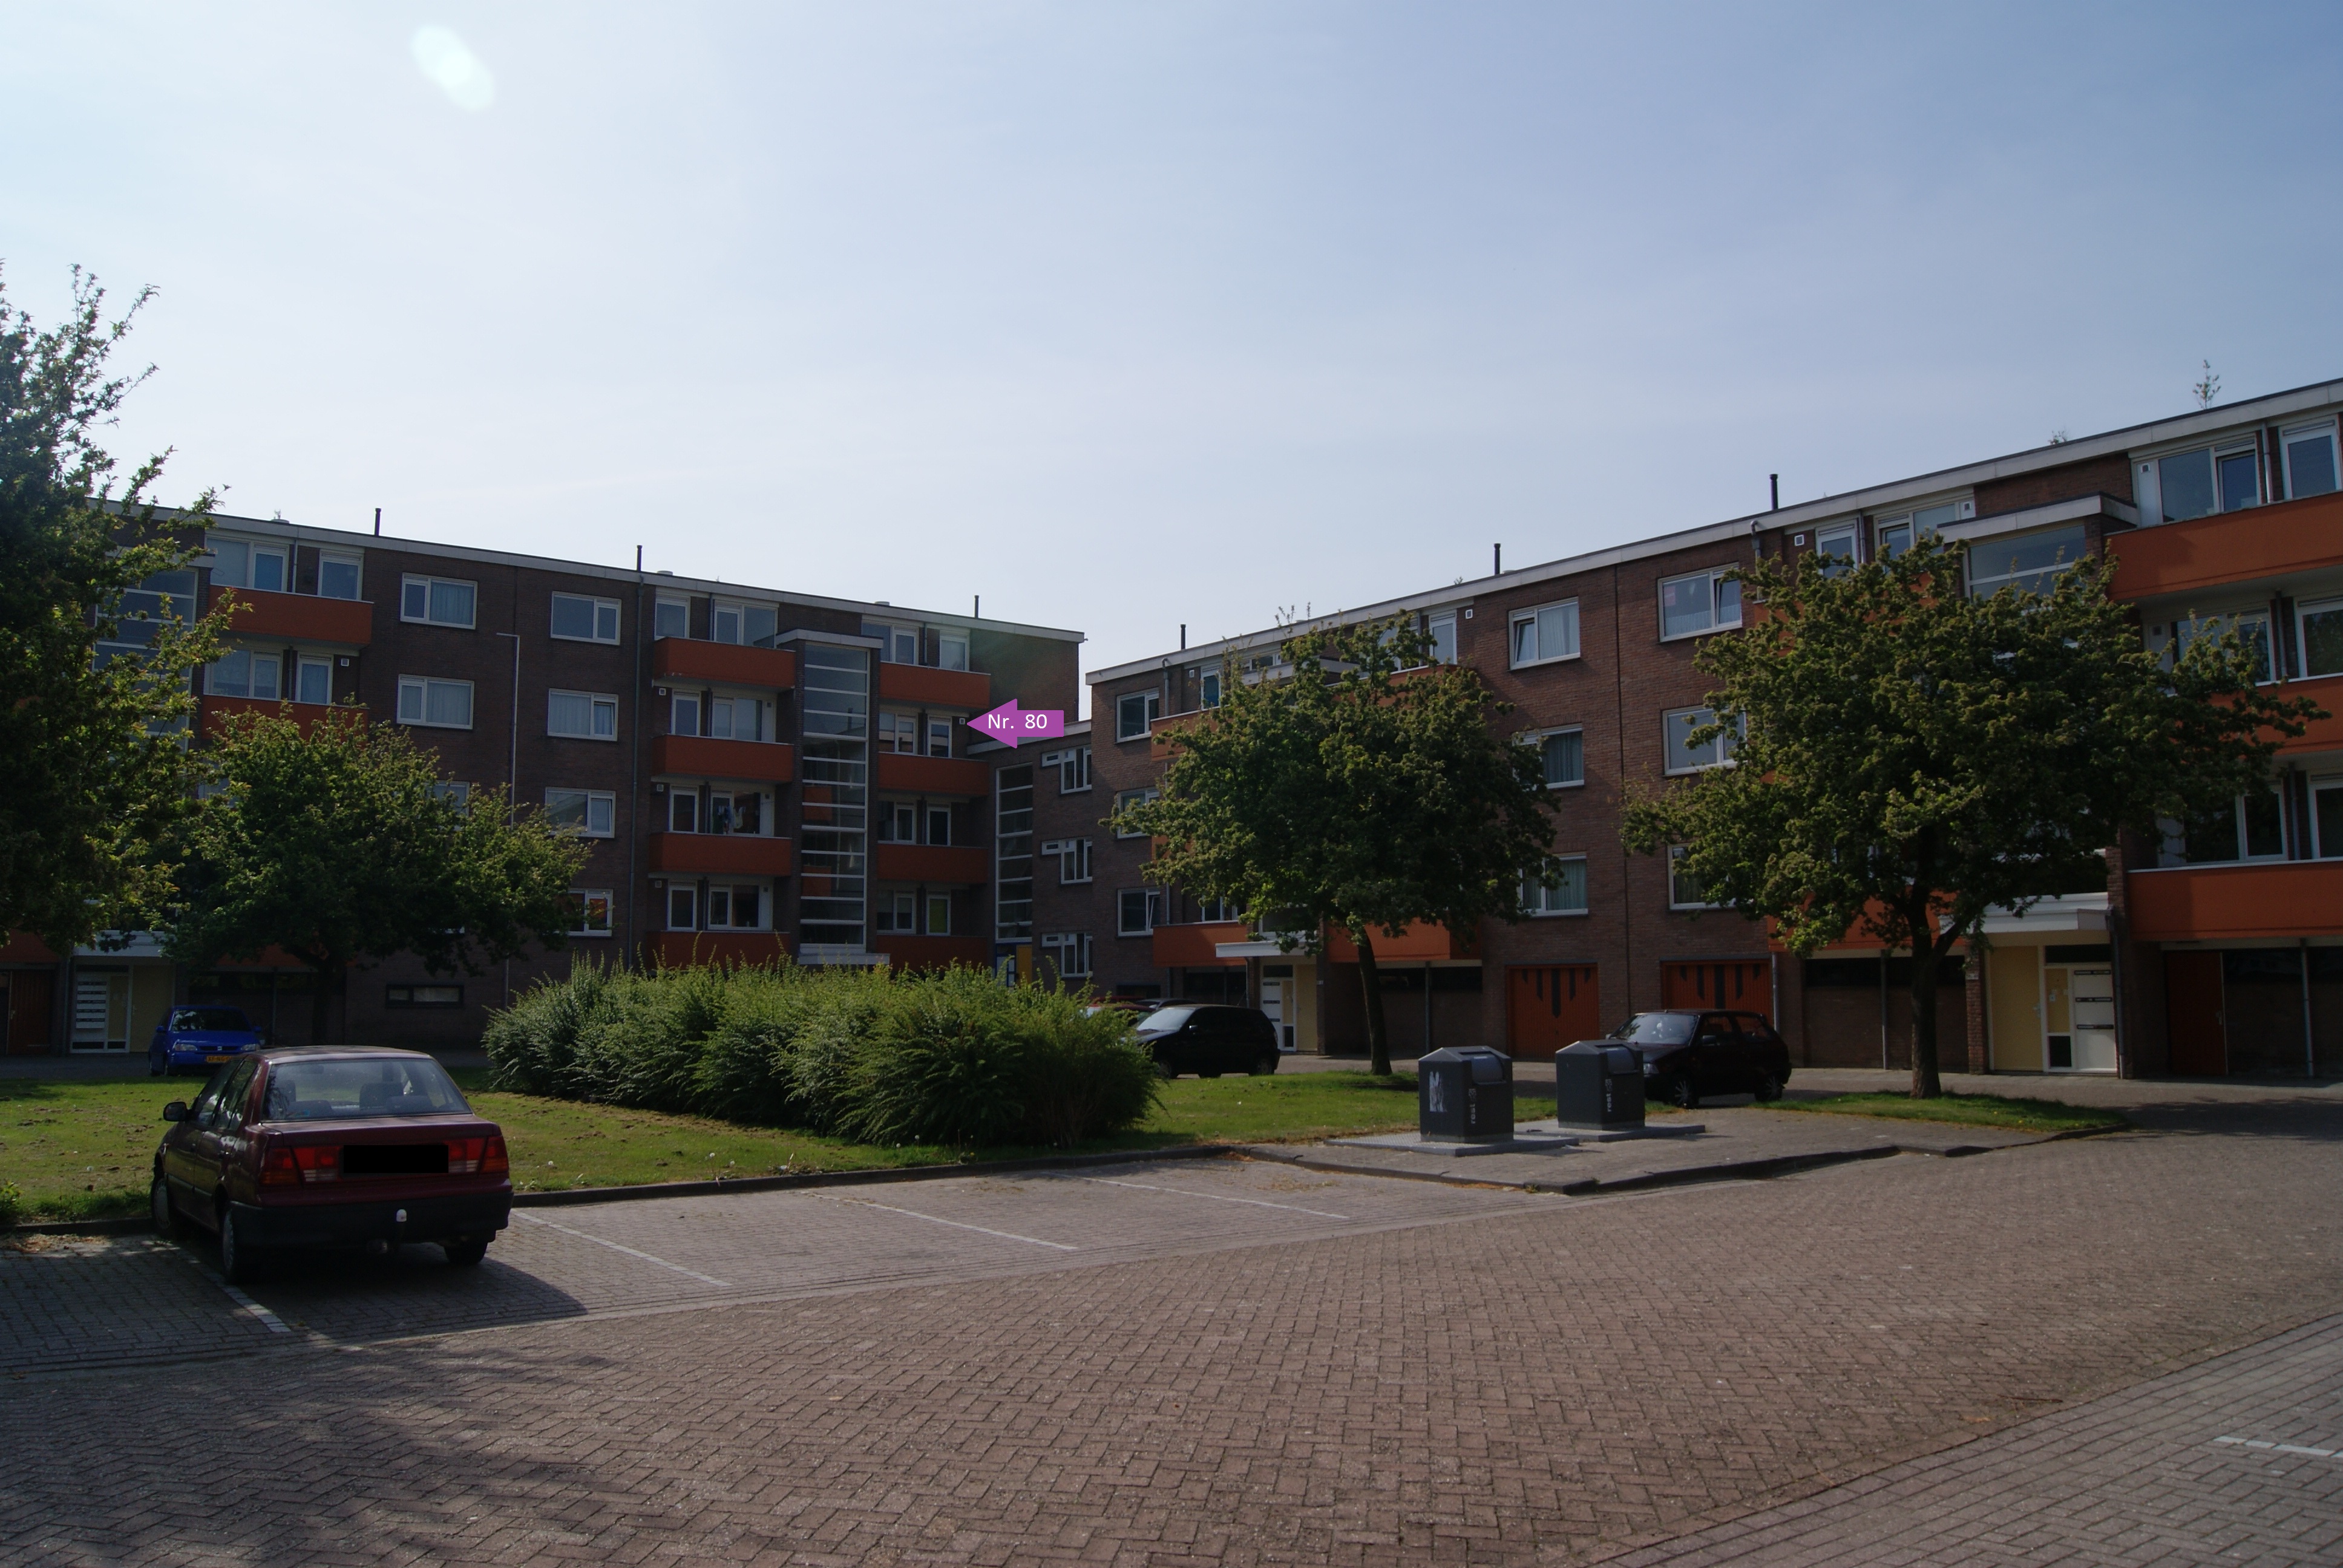 Rogier van der Weijdenstraat 80, 7741 XA Coevorden, Nederland